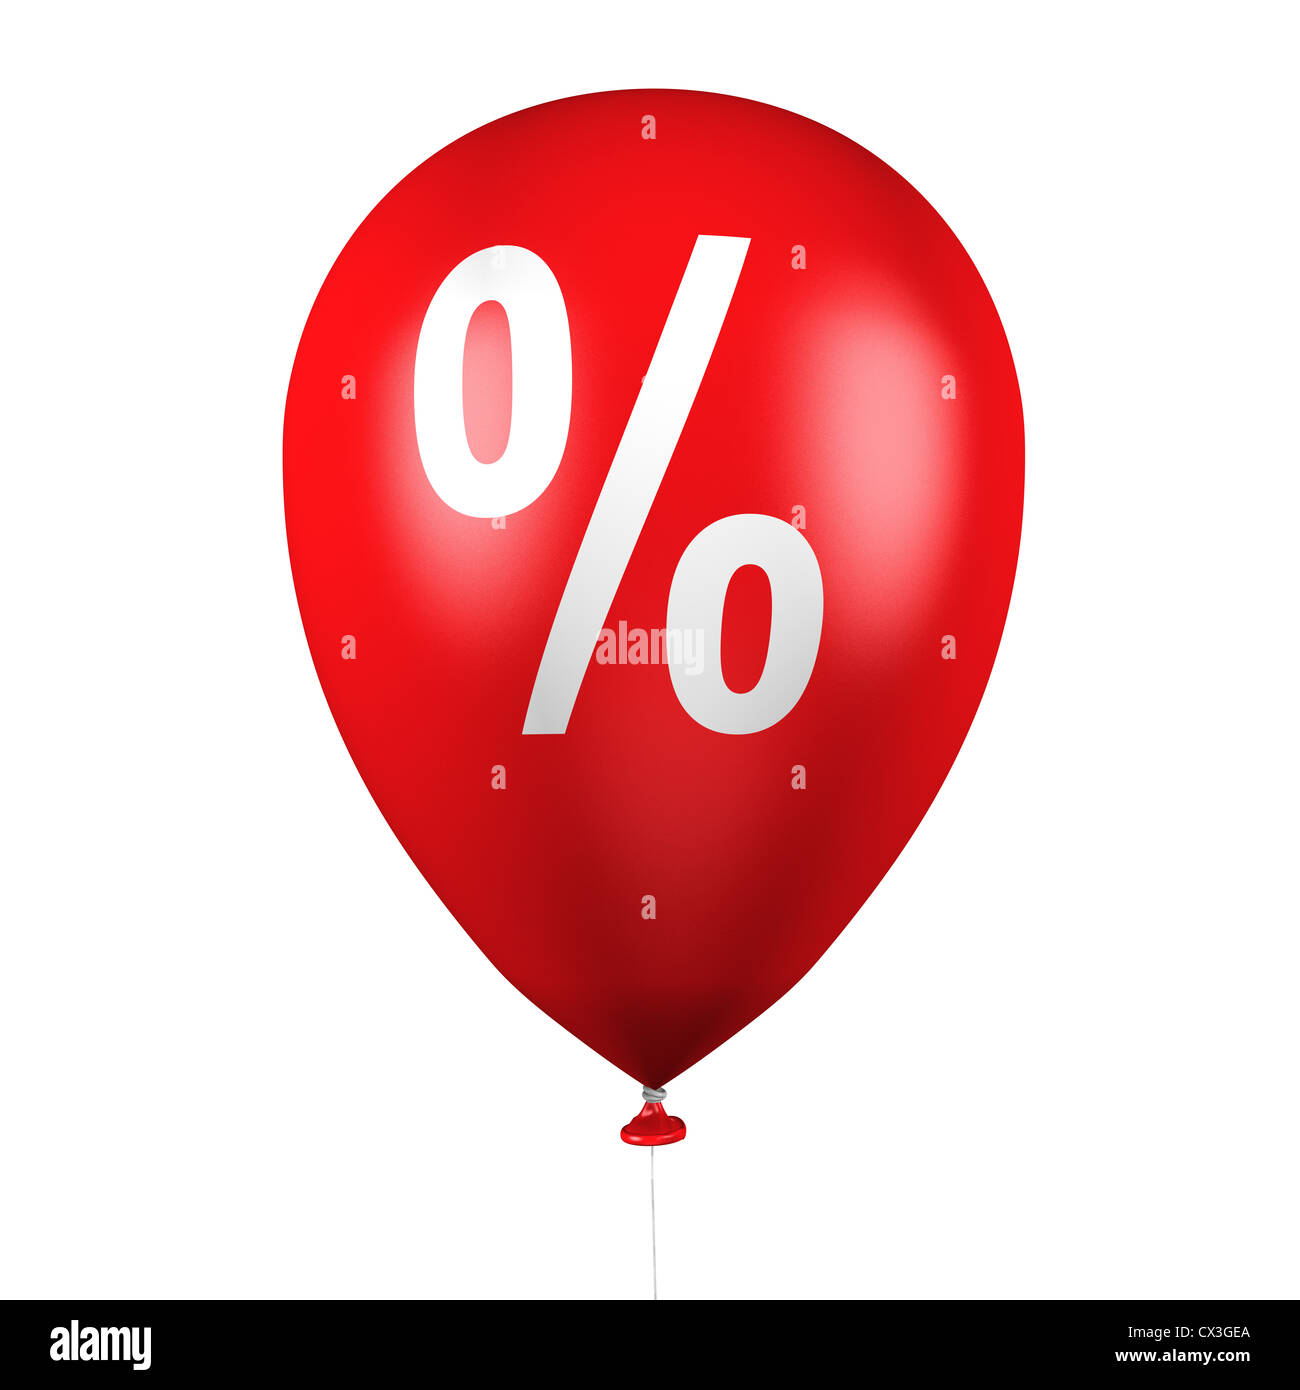 Prozentzeichen. schwarz mit ballons - ballons avec signe de pourcentage sur fond blanc Banque D'Images